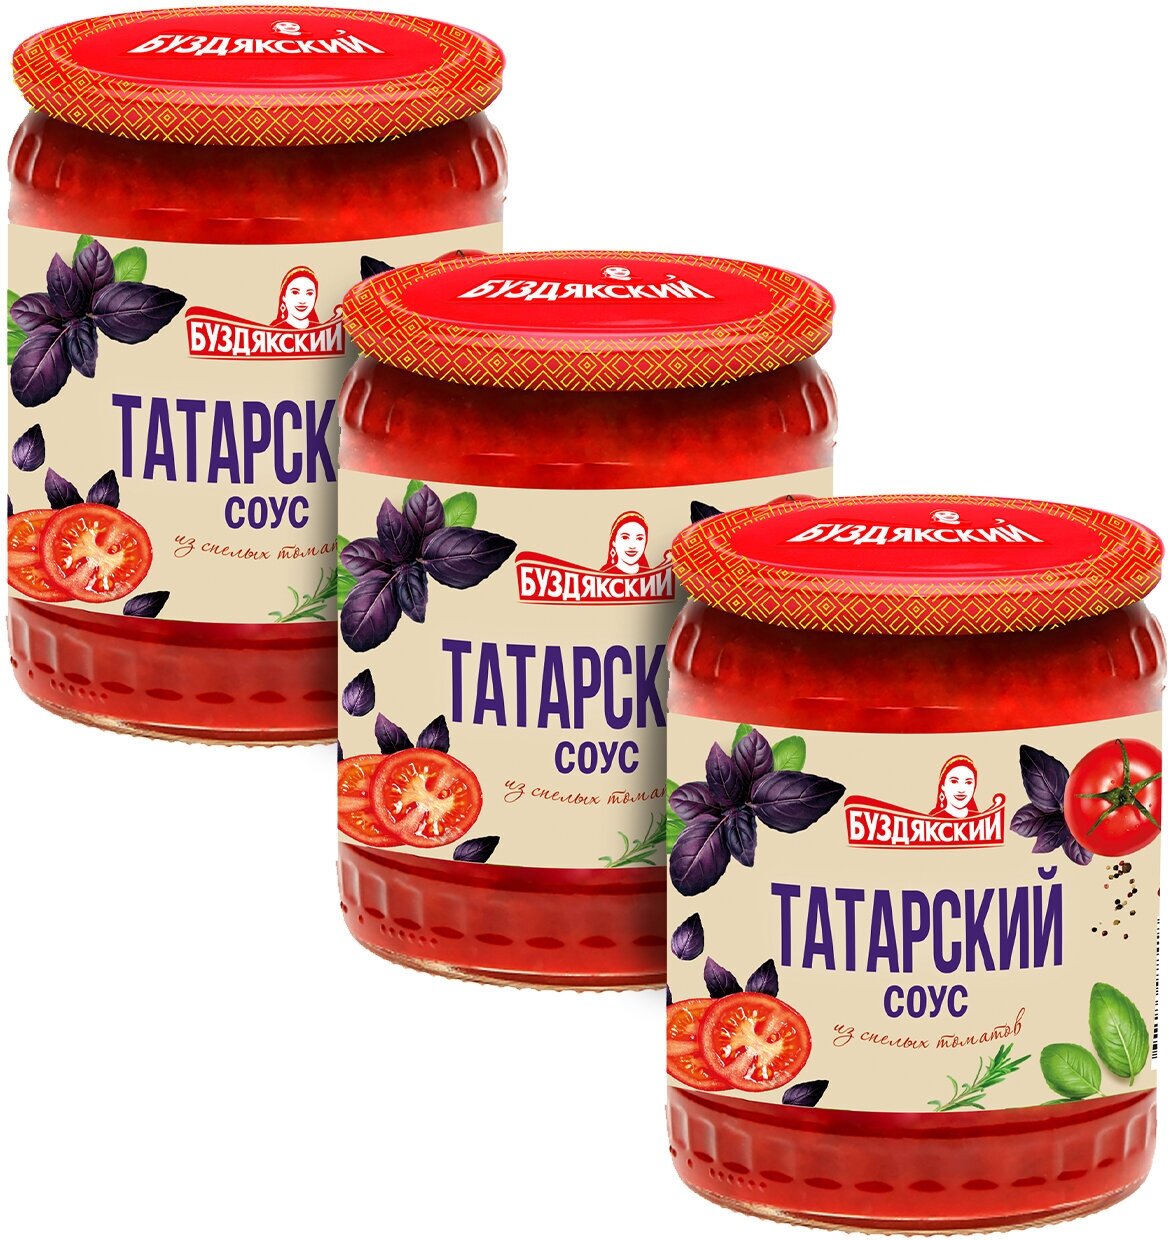 Соус томатный Буздякский Татарский, 500г х 3шт